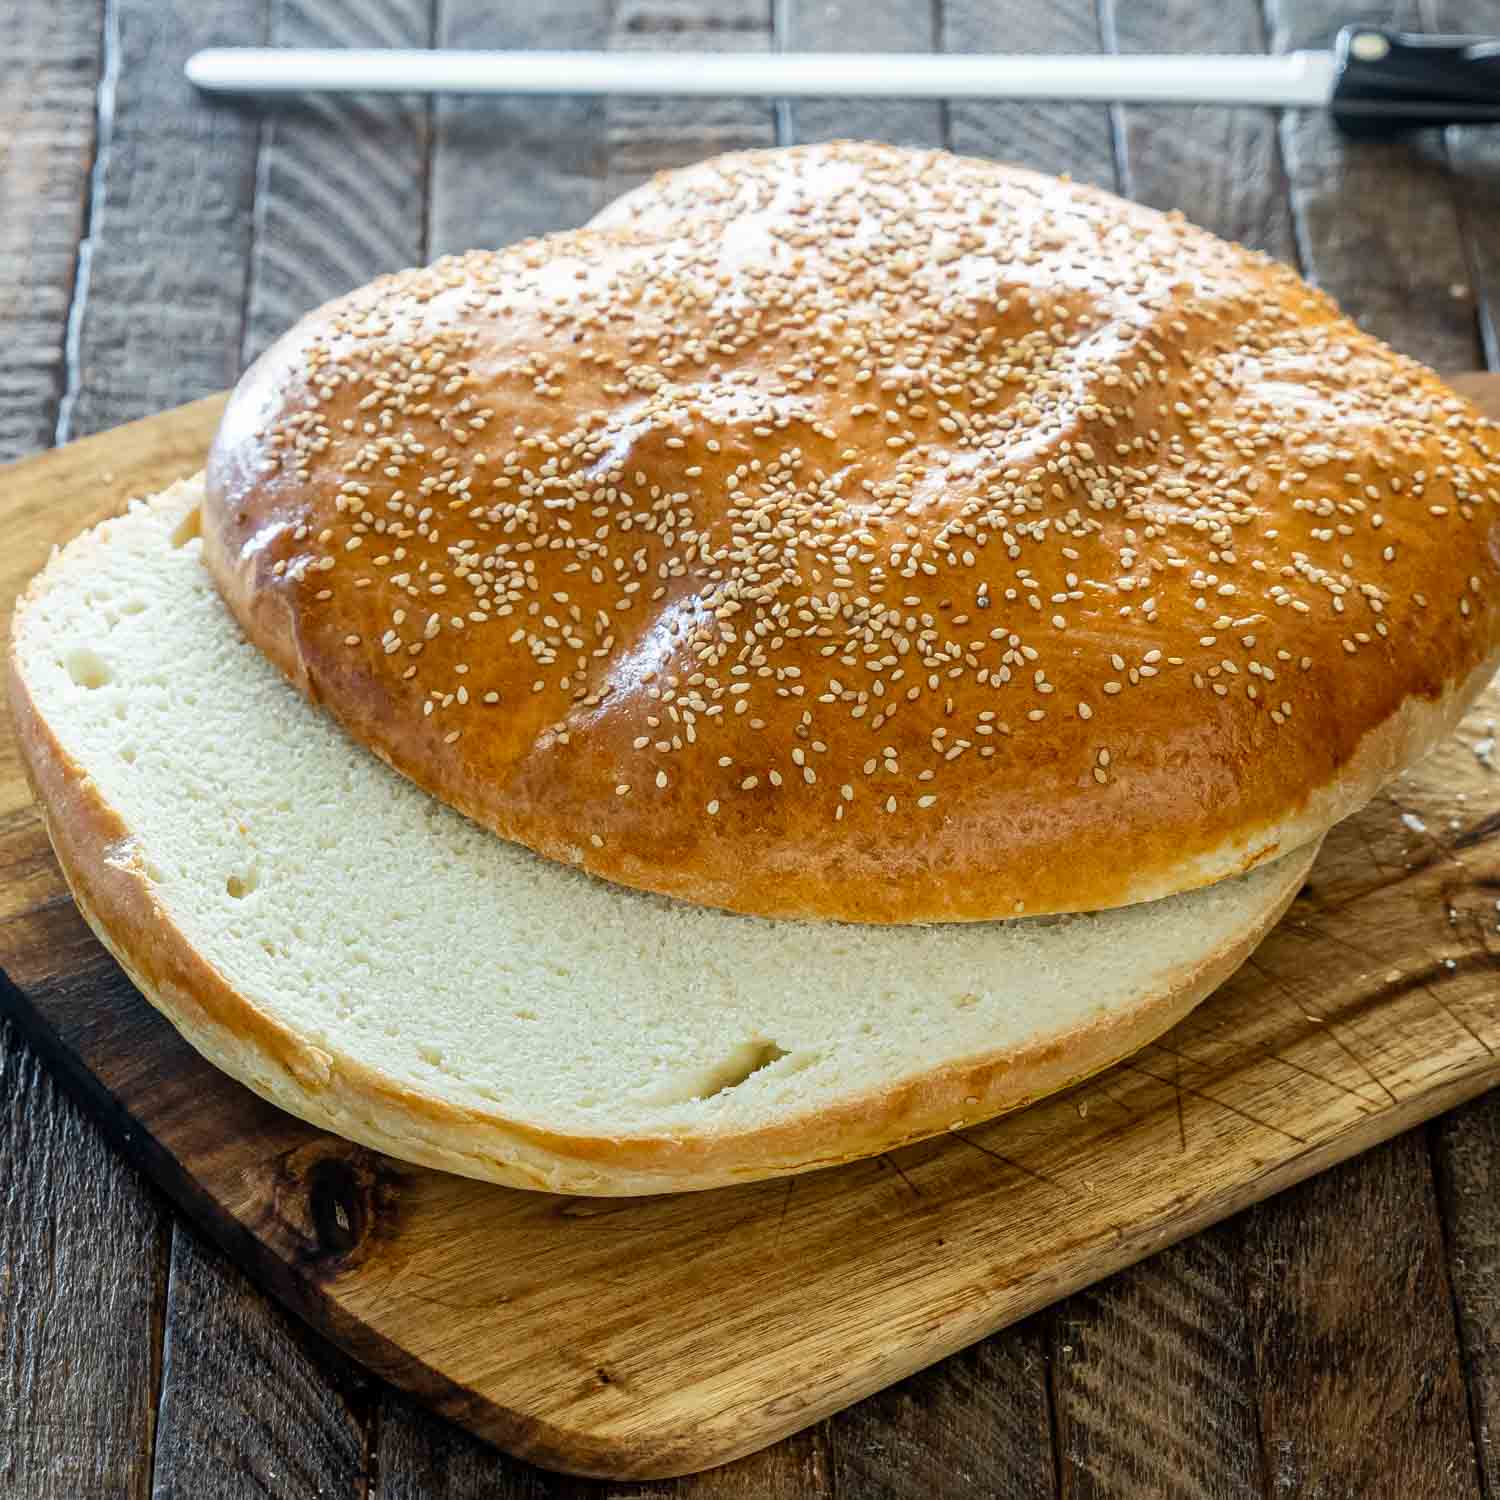 muffuletta bread cut in half on a cutting board.